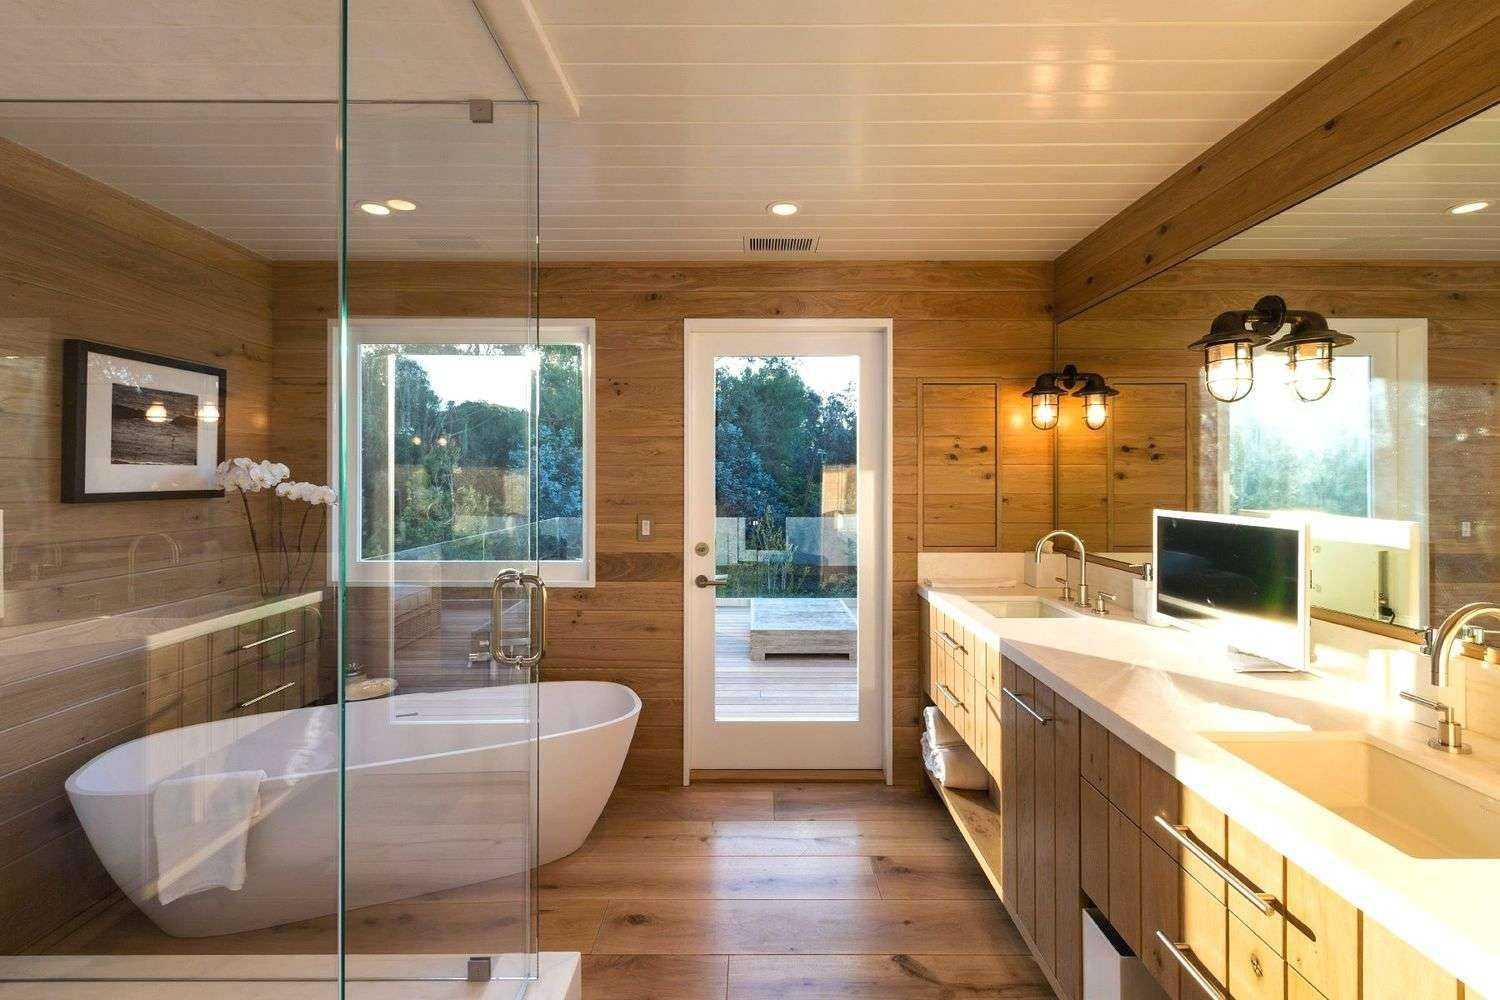 Ванная в деревянном доме требует особого отношения к ее оборудованию На что следует братить повышенное внимание Обзор удачных вариантов